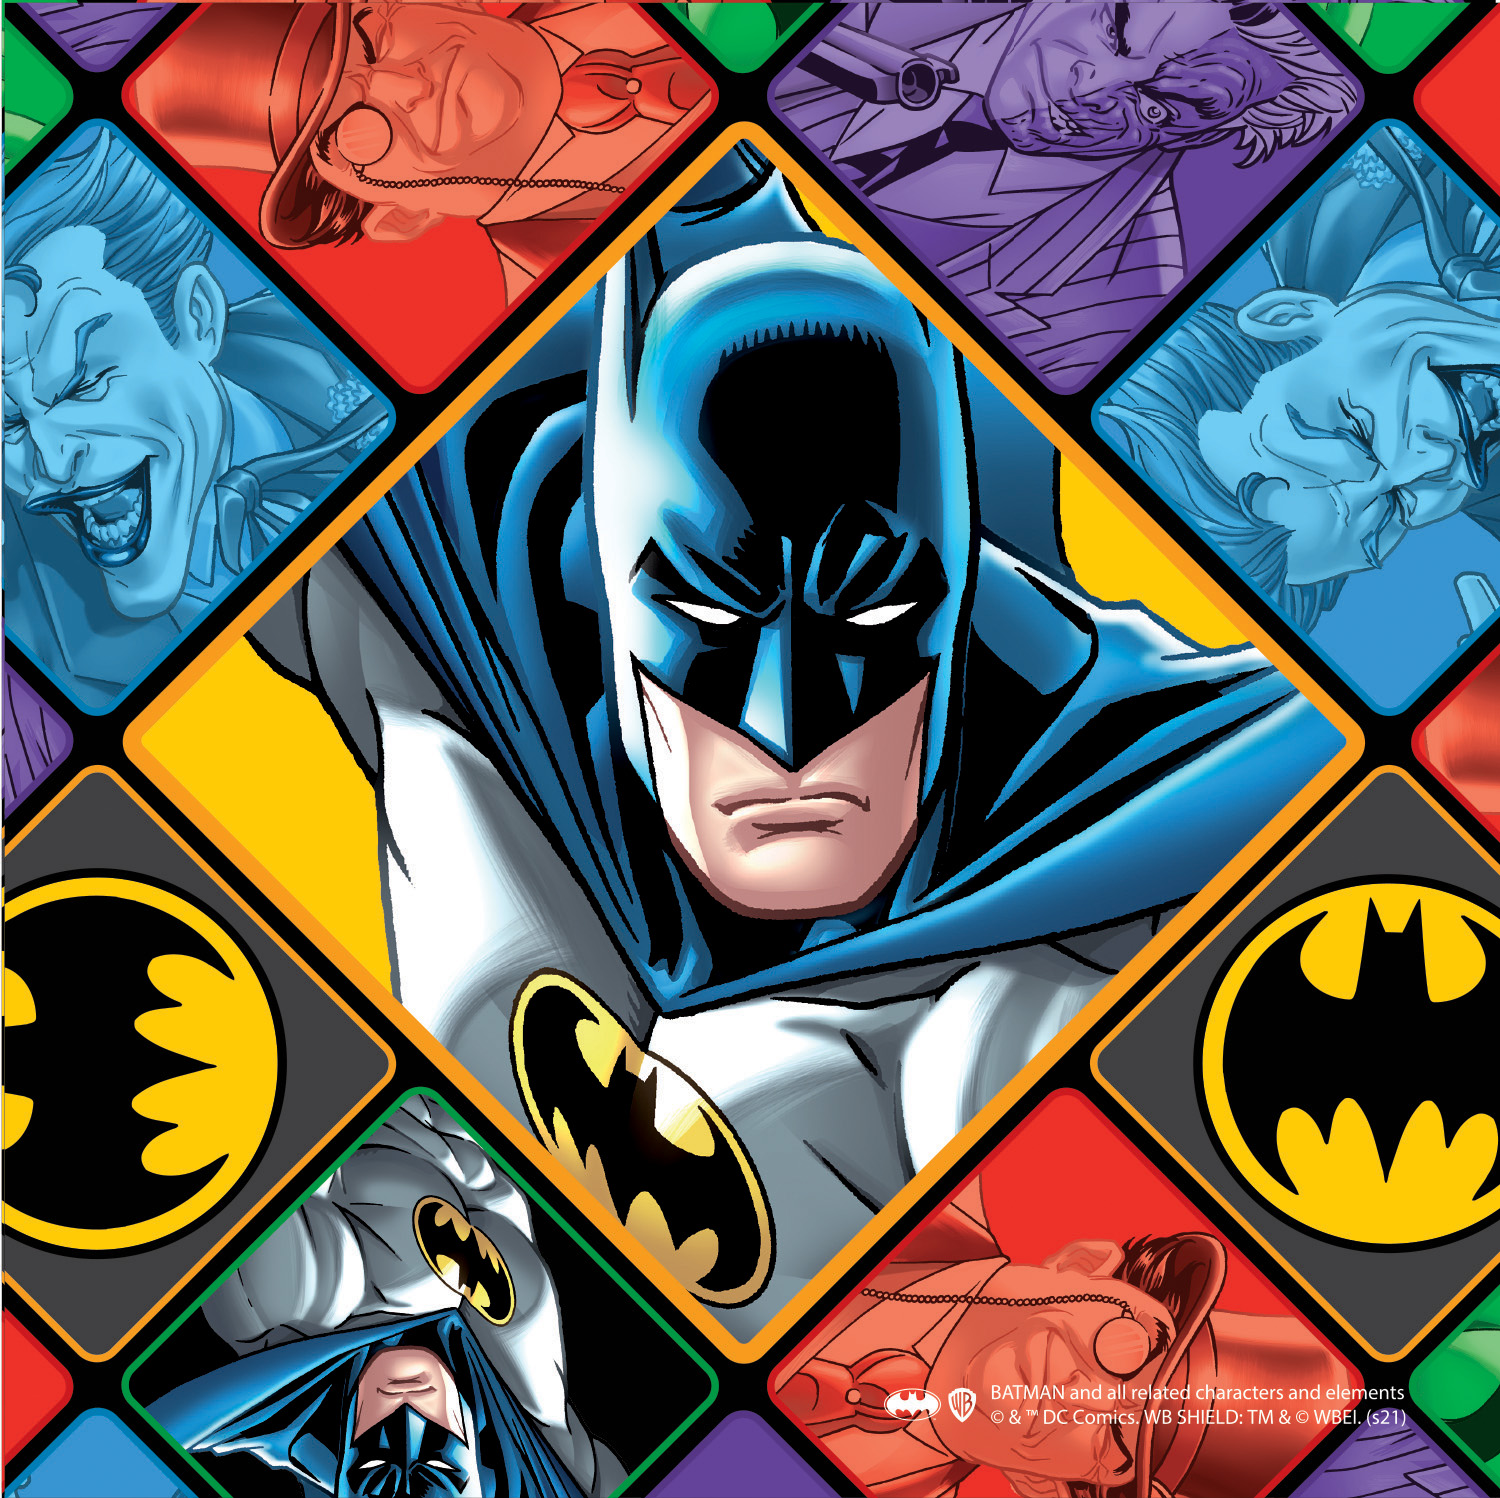 81 pc puzzle of Batman in his suit, bat signal and villans